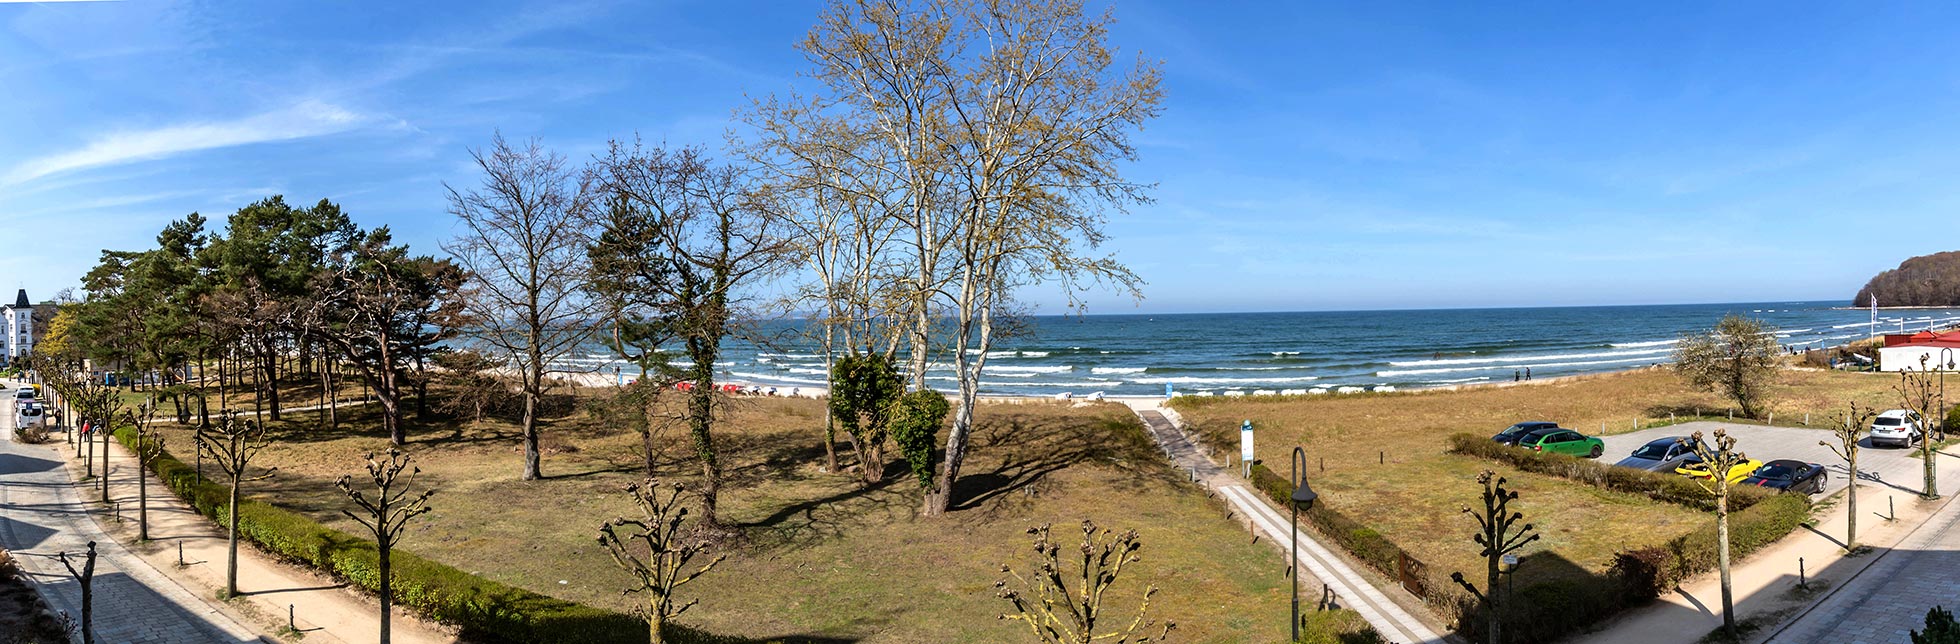 Seeschloss Binz Appartmenthaus - Ferienwohnungen - direkt am Strand in Binz auf Rügen
